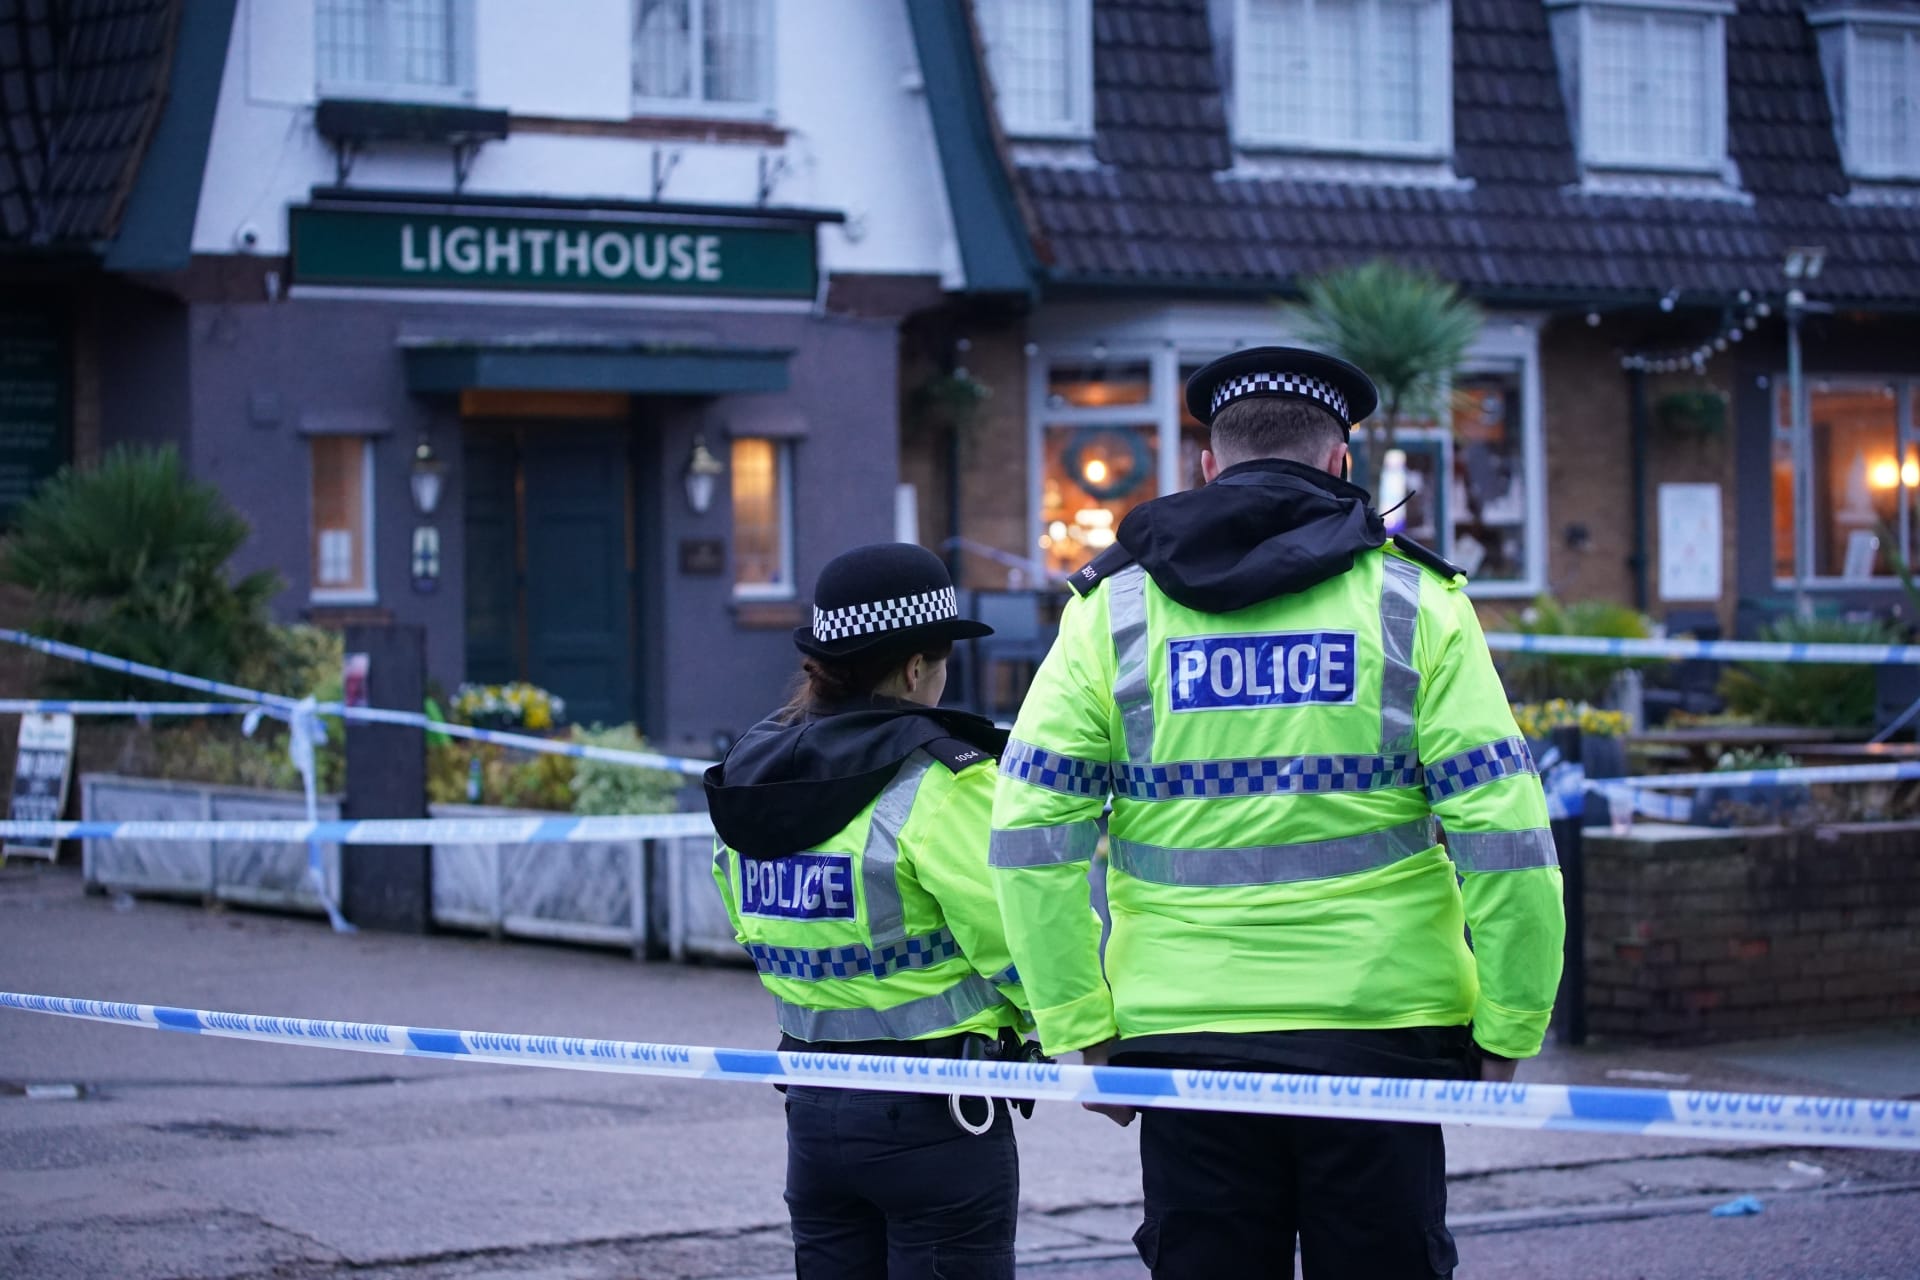 V hospodě v anglickém městě Wallasey došlo na Štědrý den ke střelbě, jedna žena zemřela, další lidé jsou zraněni.